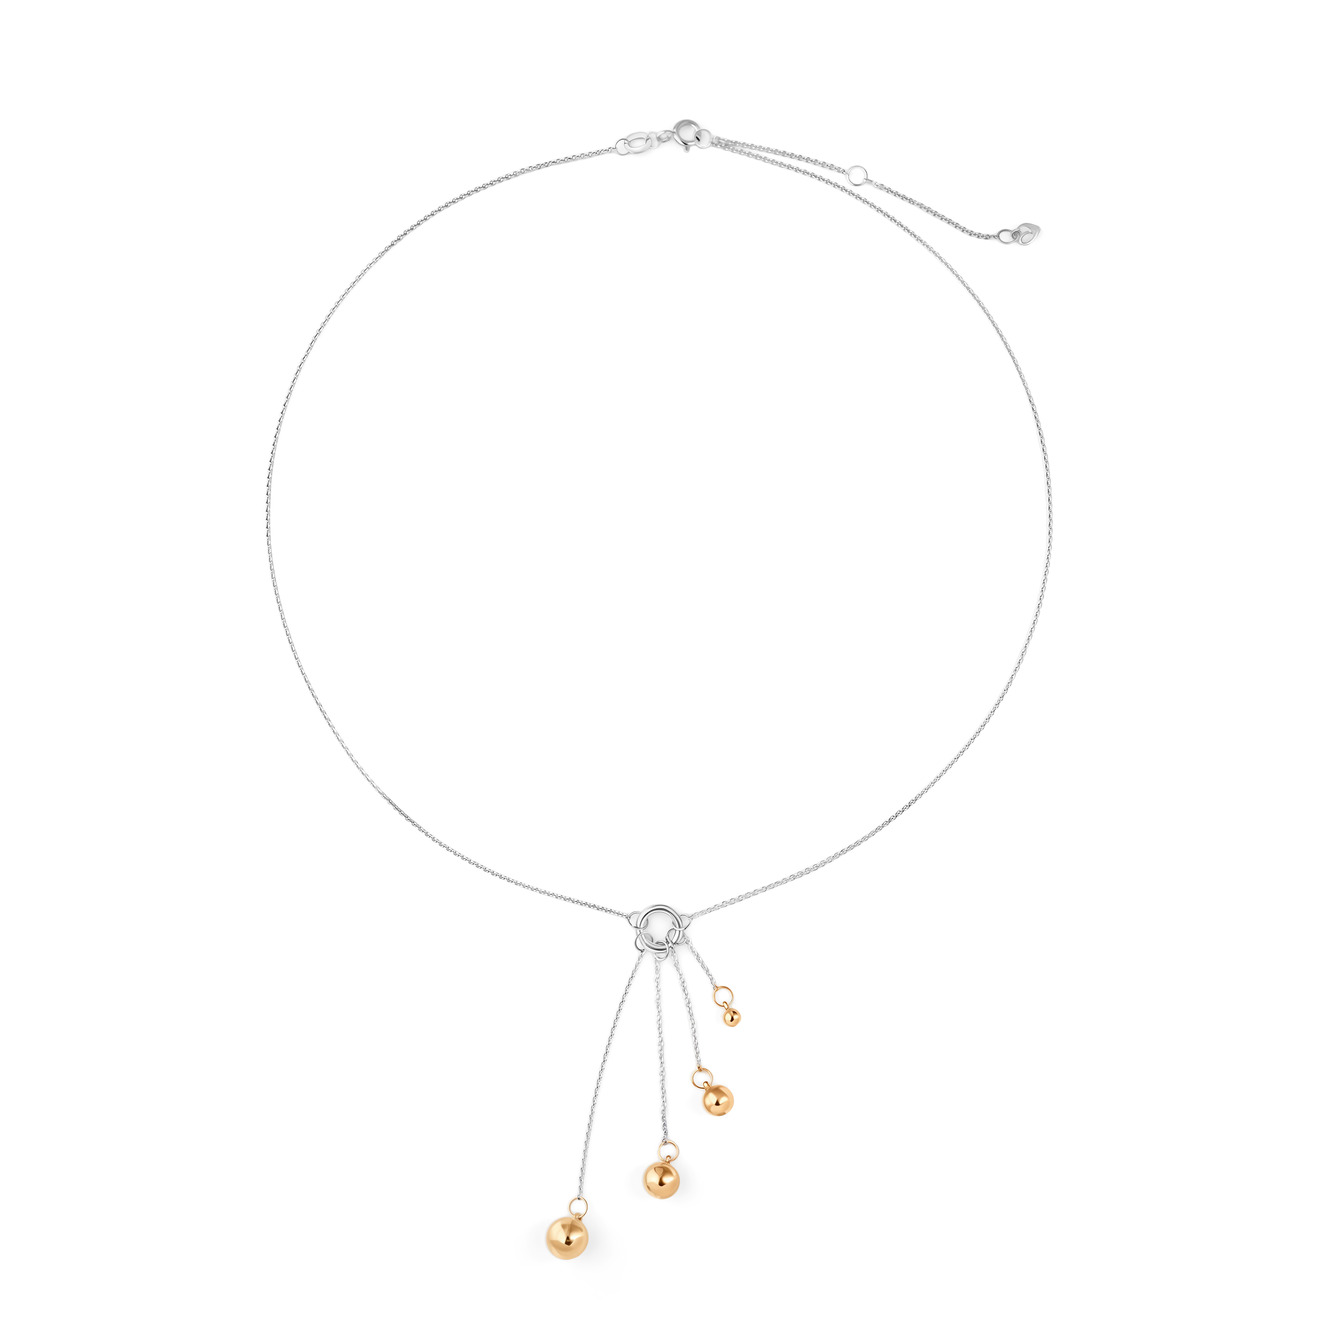 УРА jewelry Подвеска Шары из серебра с позолоченными шариками ура jewelry подвеска зайка из серебра